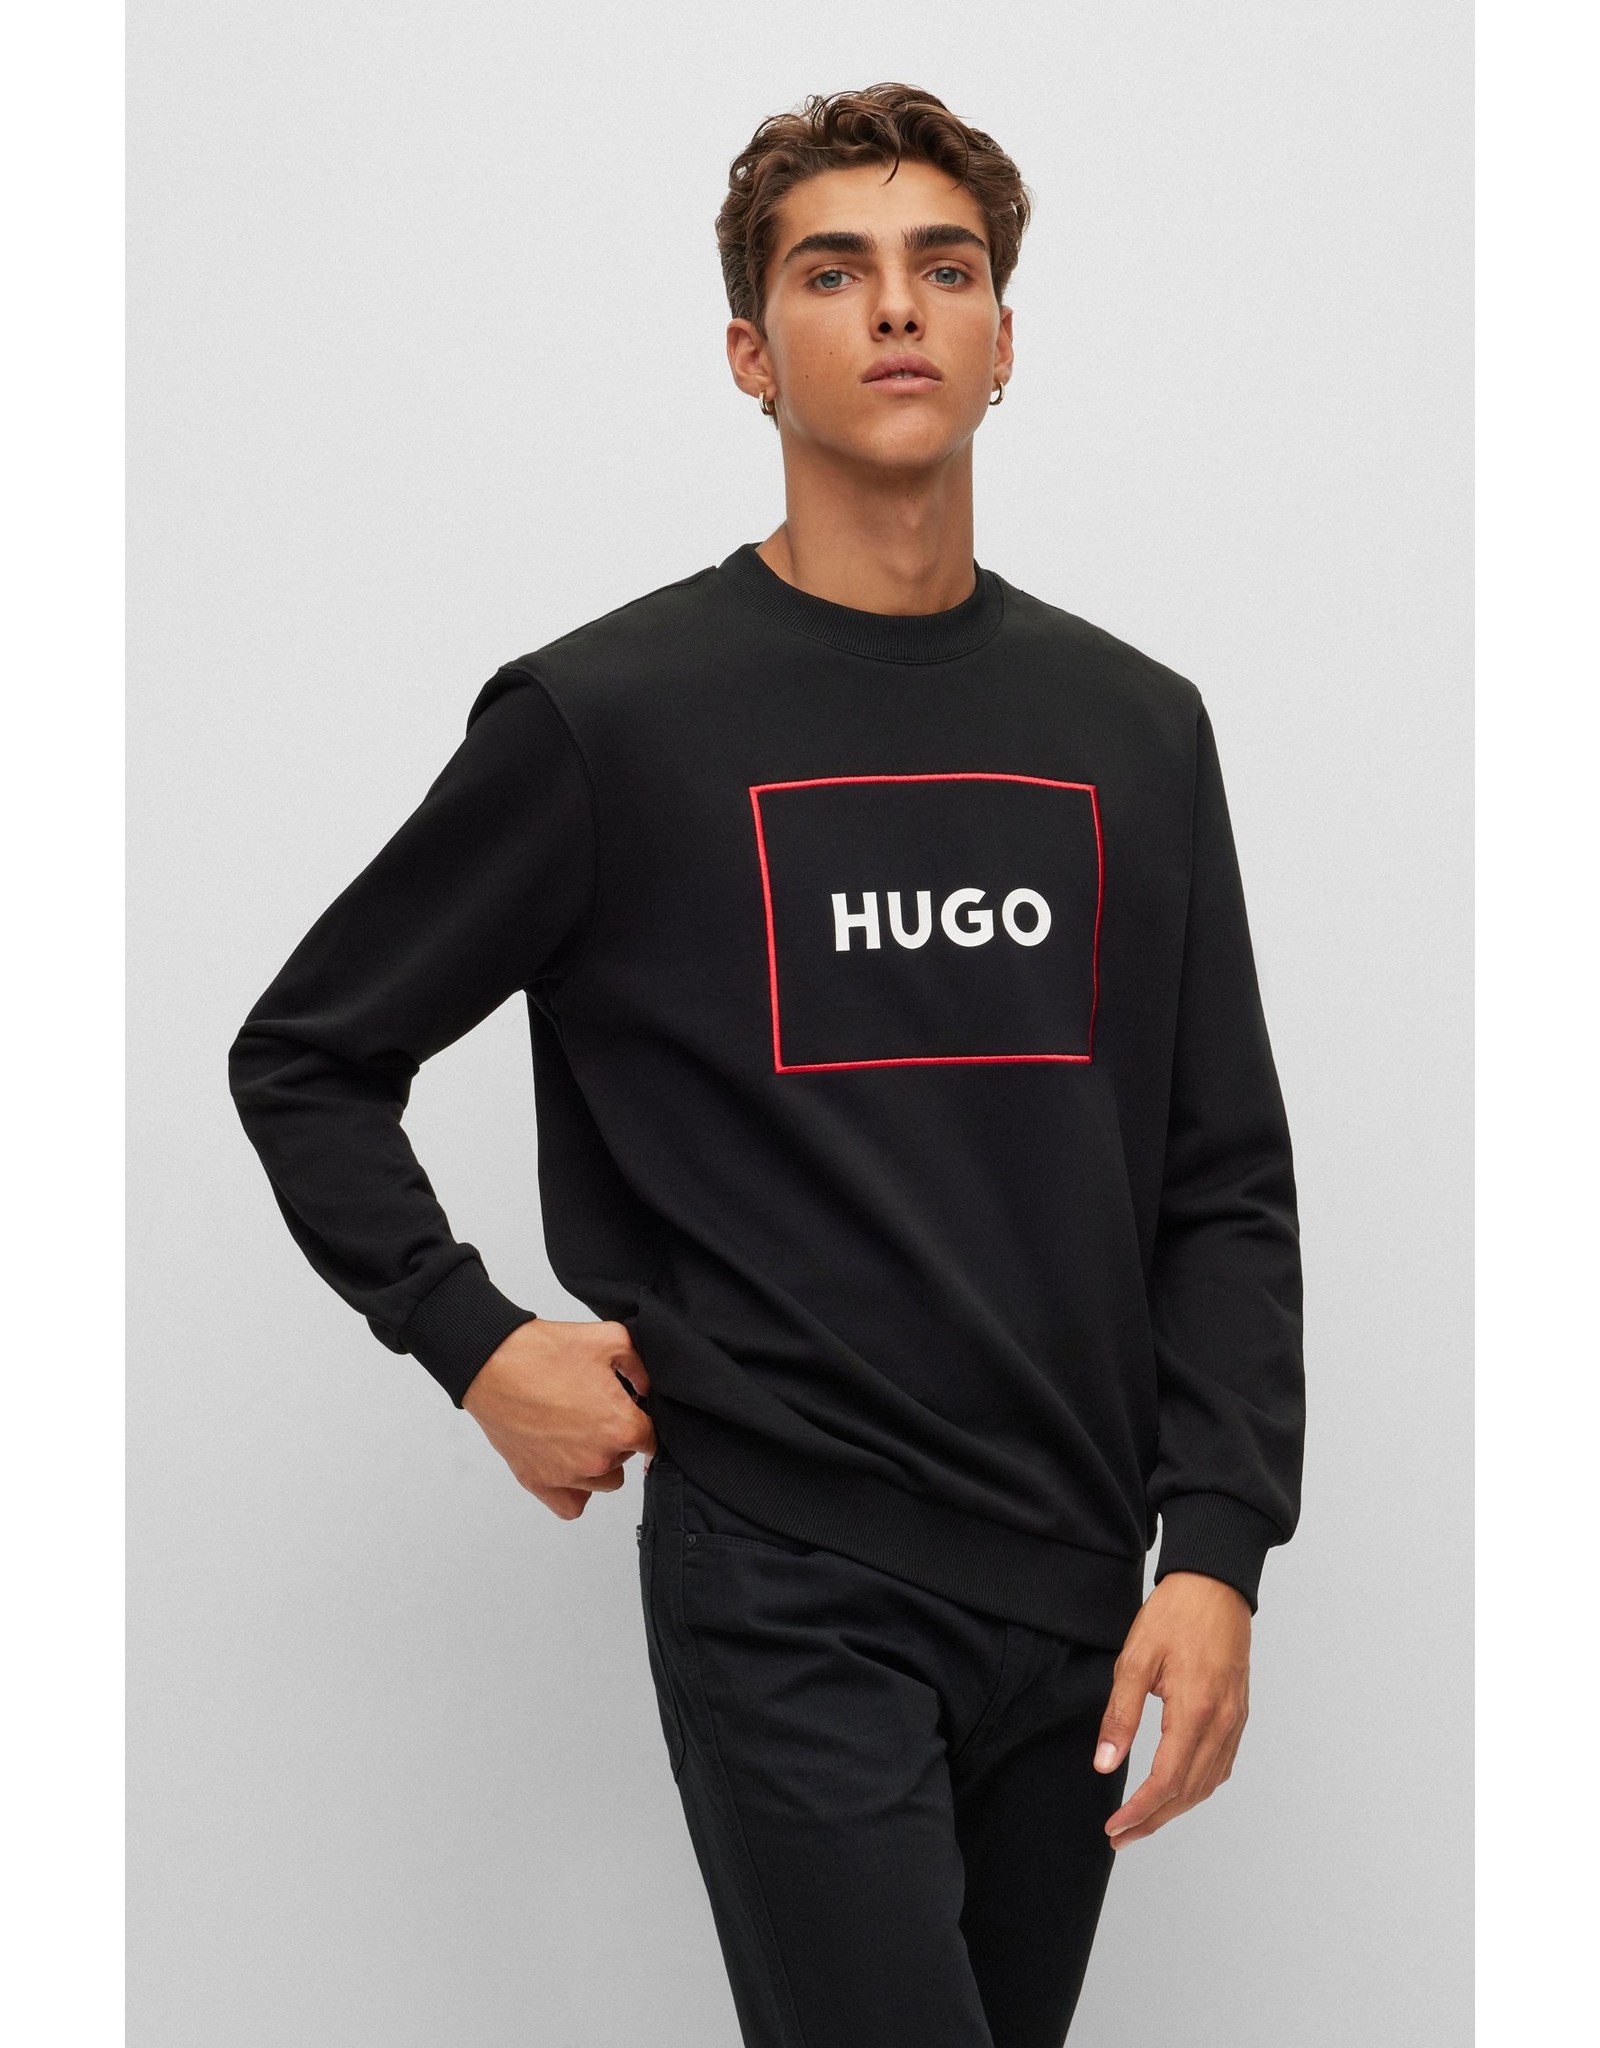 HUGO HUGO DELERY